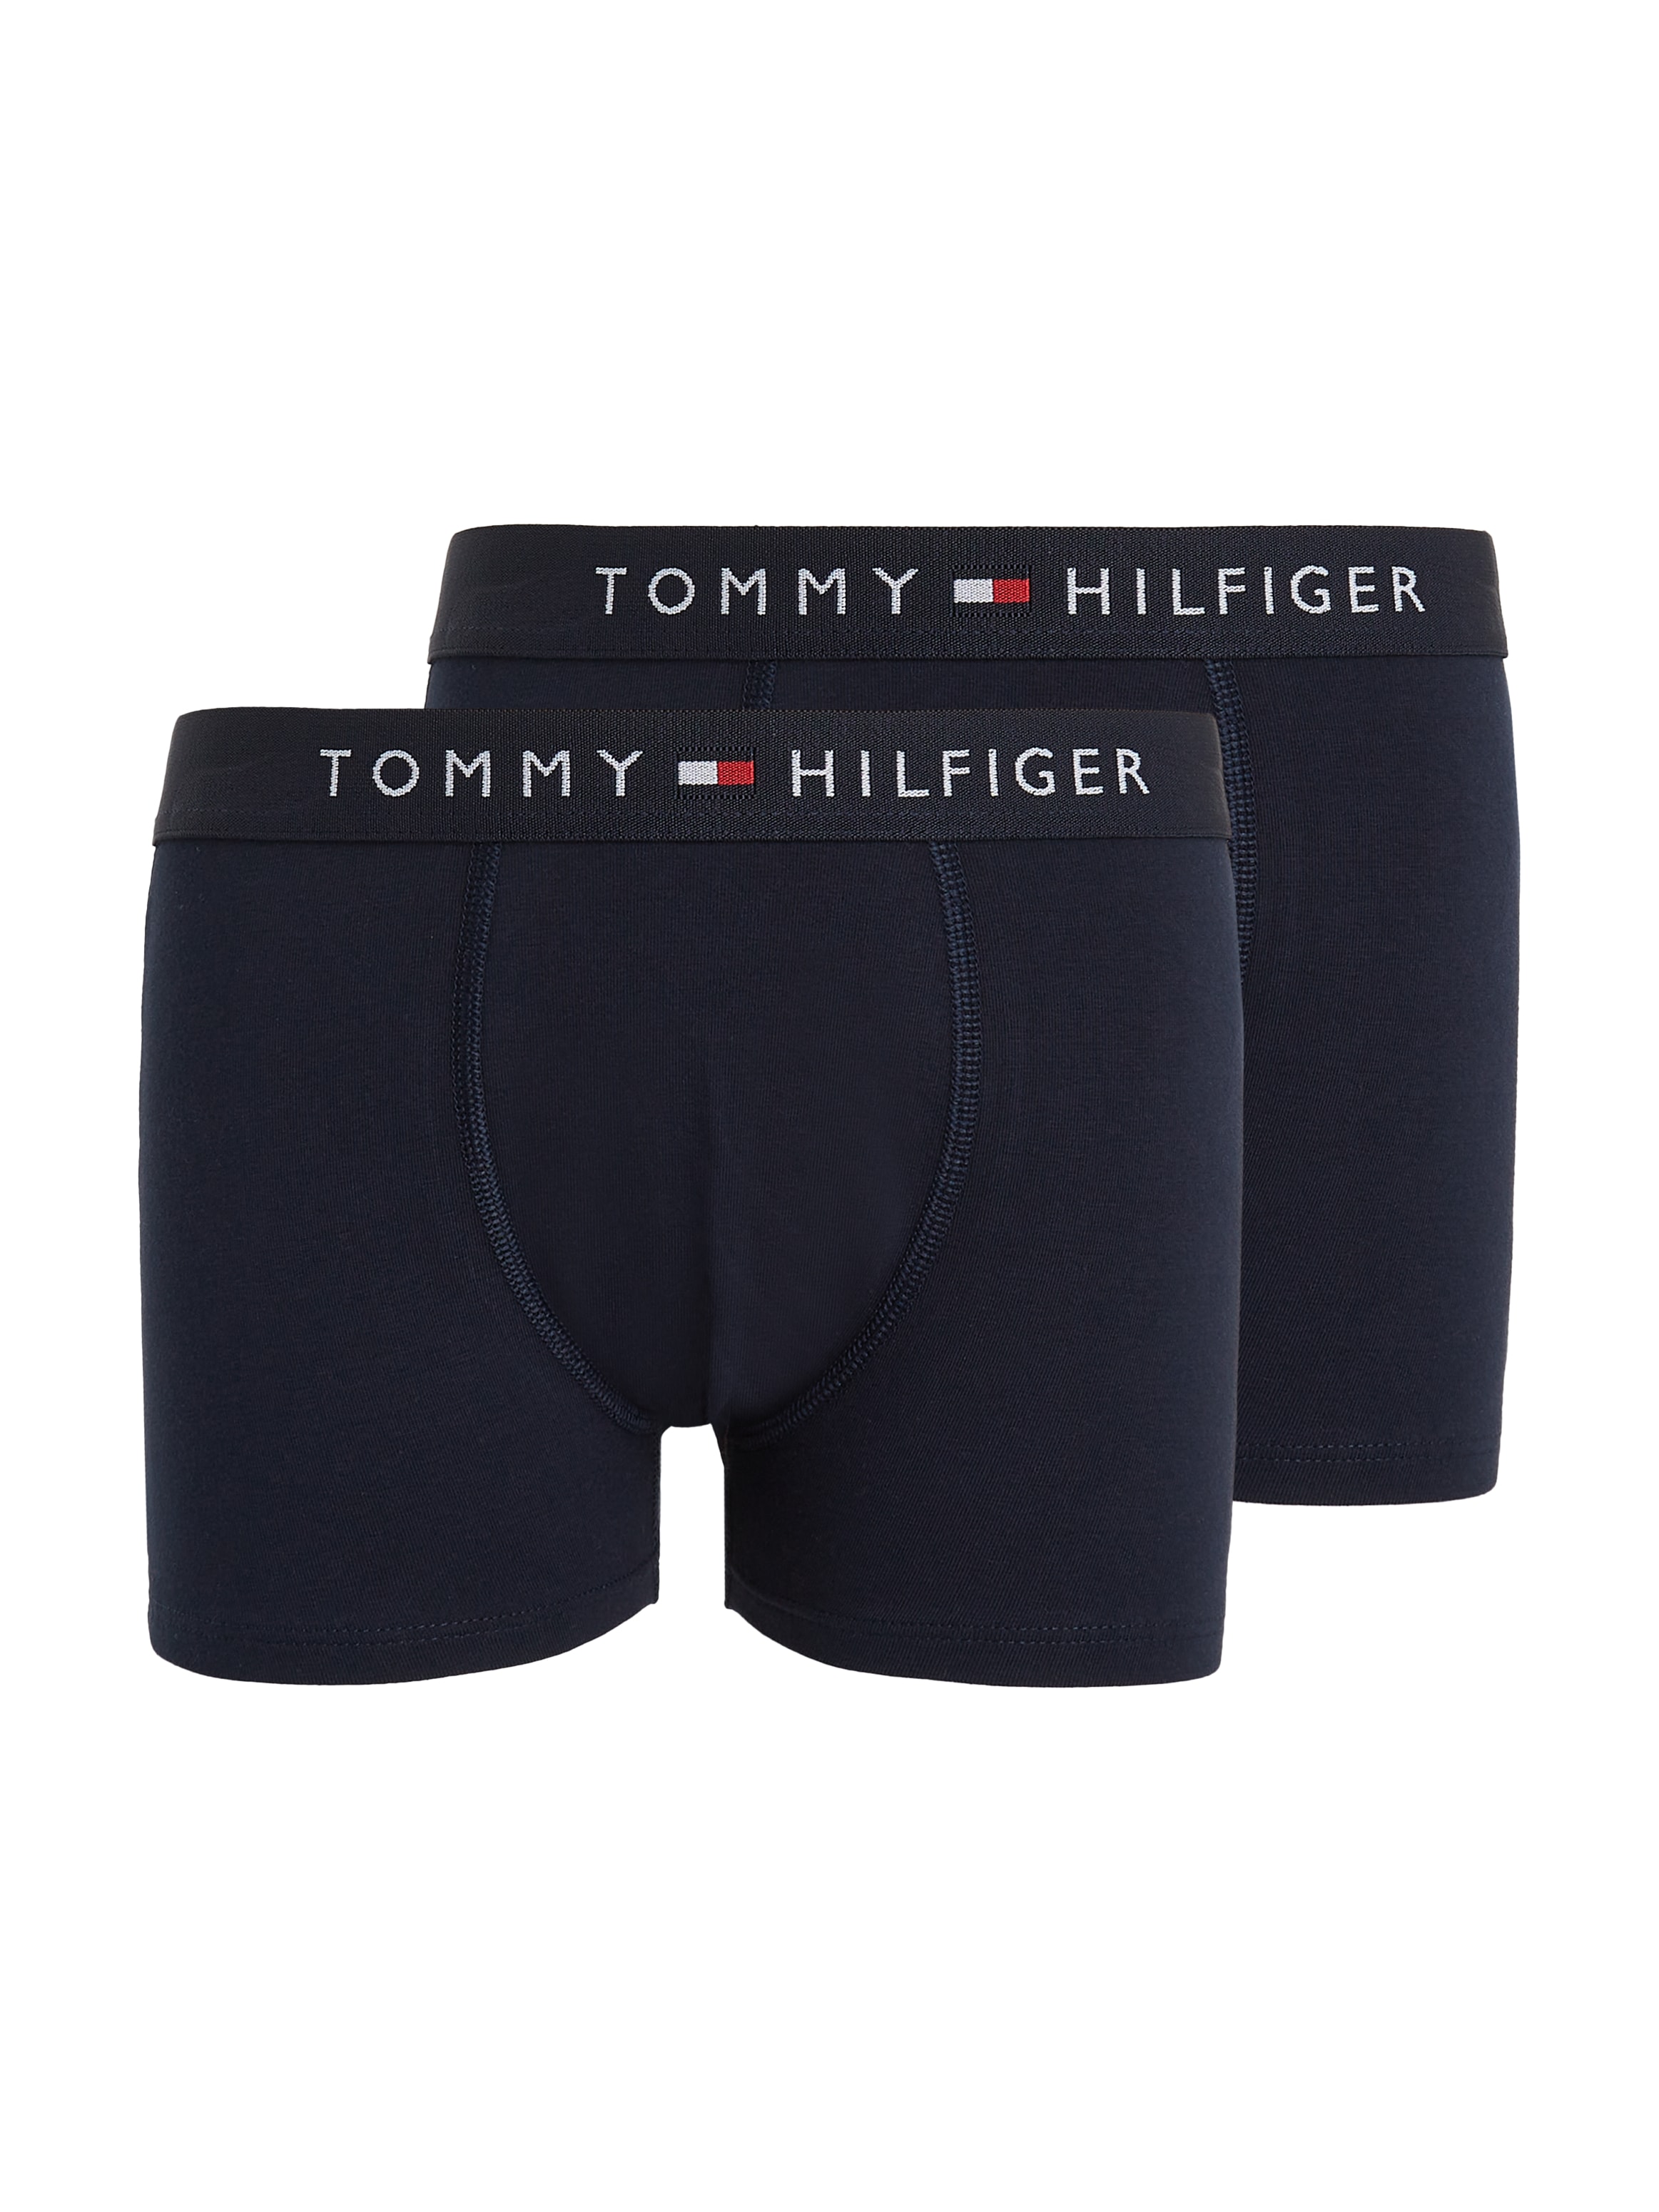 2 auf mit St., Hilfiger Tommy Trunk, bestellen Logo dem Taillenbund online (Packung, 2er-Pack), Underwear